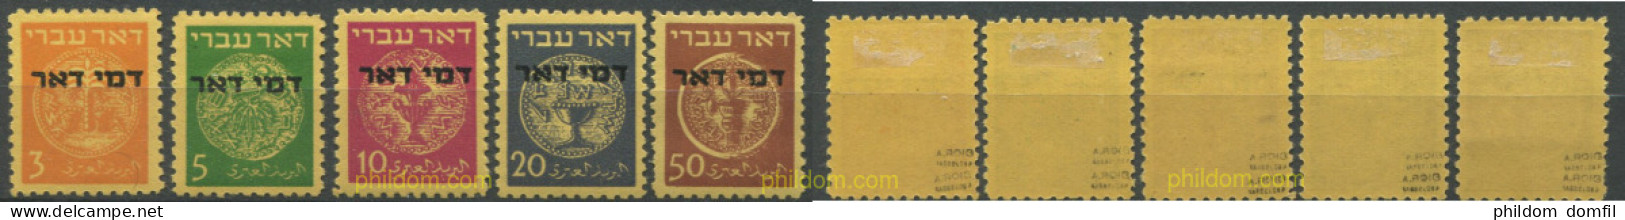 689111 HINGED ISRAEL 1948 NACIONAL - Nuevos (sin Tab)